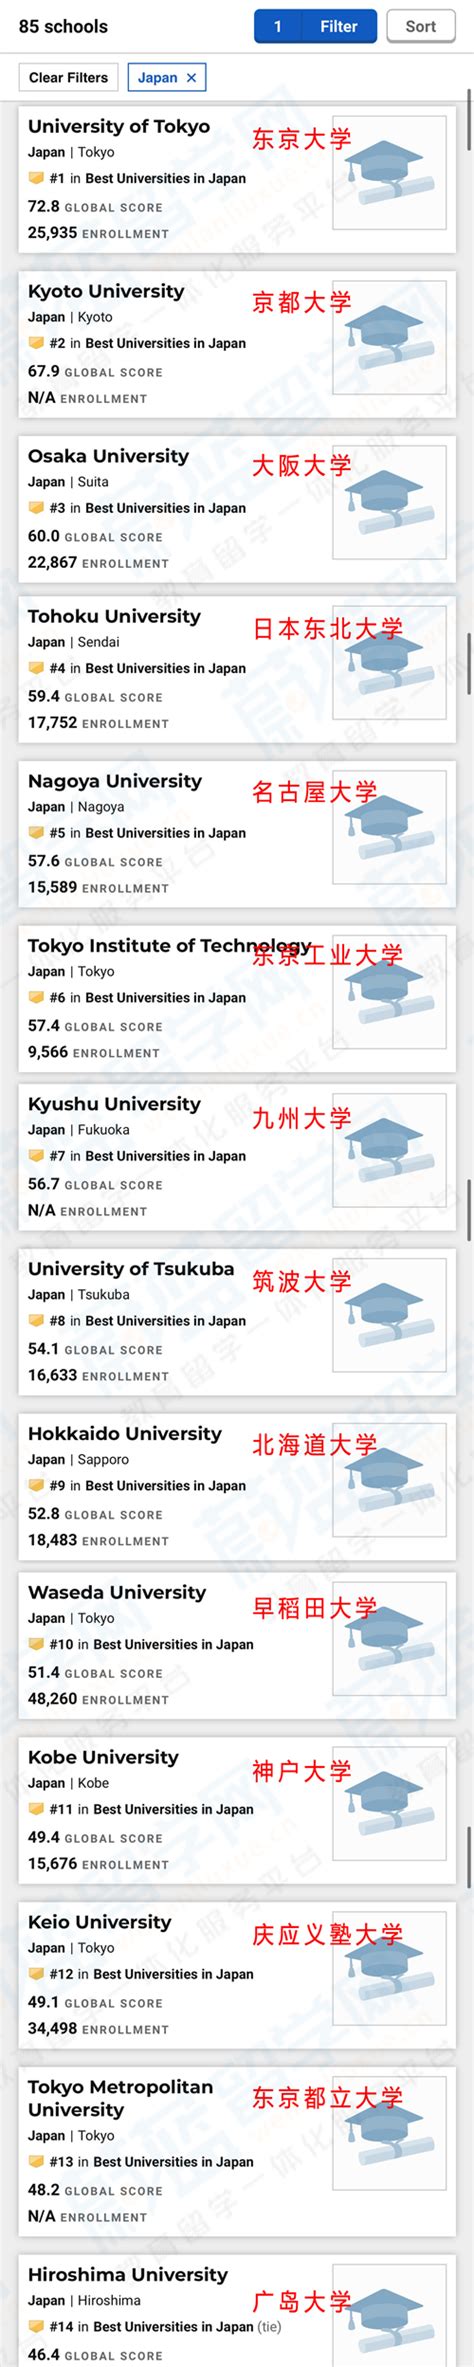 2021年usnews世界大学排名榜之日本大学排名_蔚蓝留学网